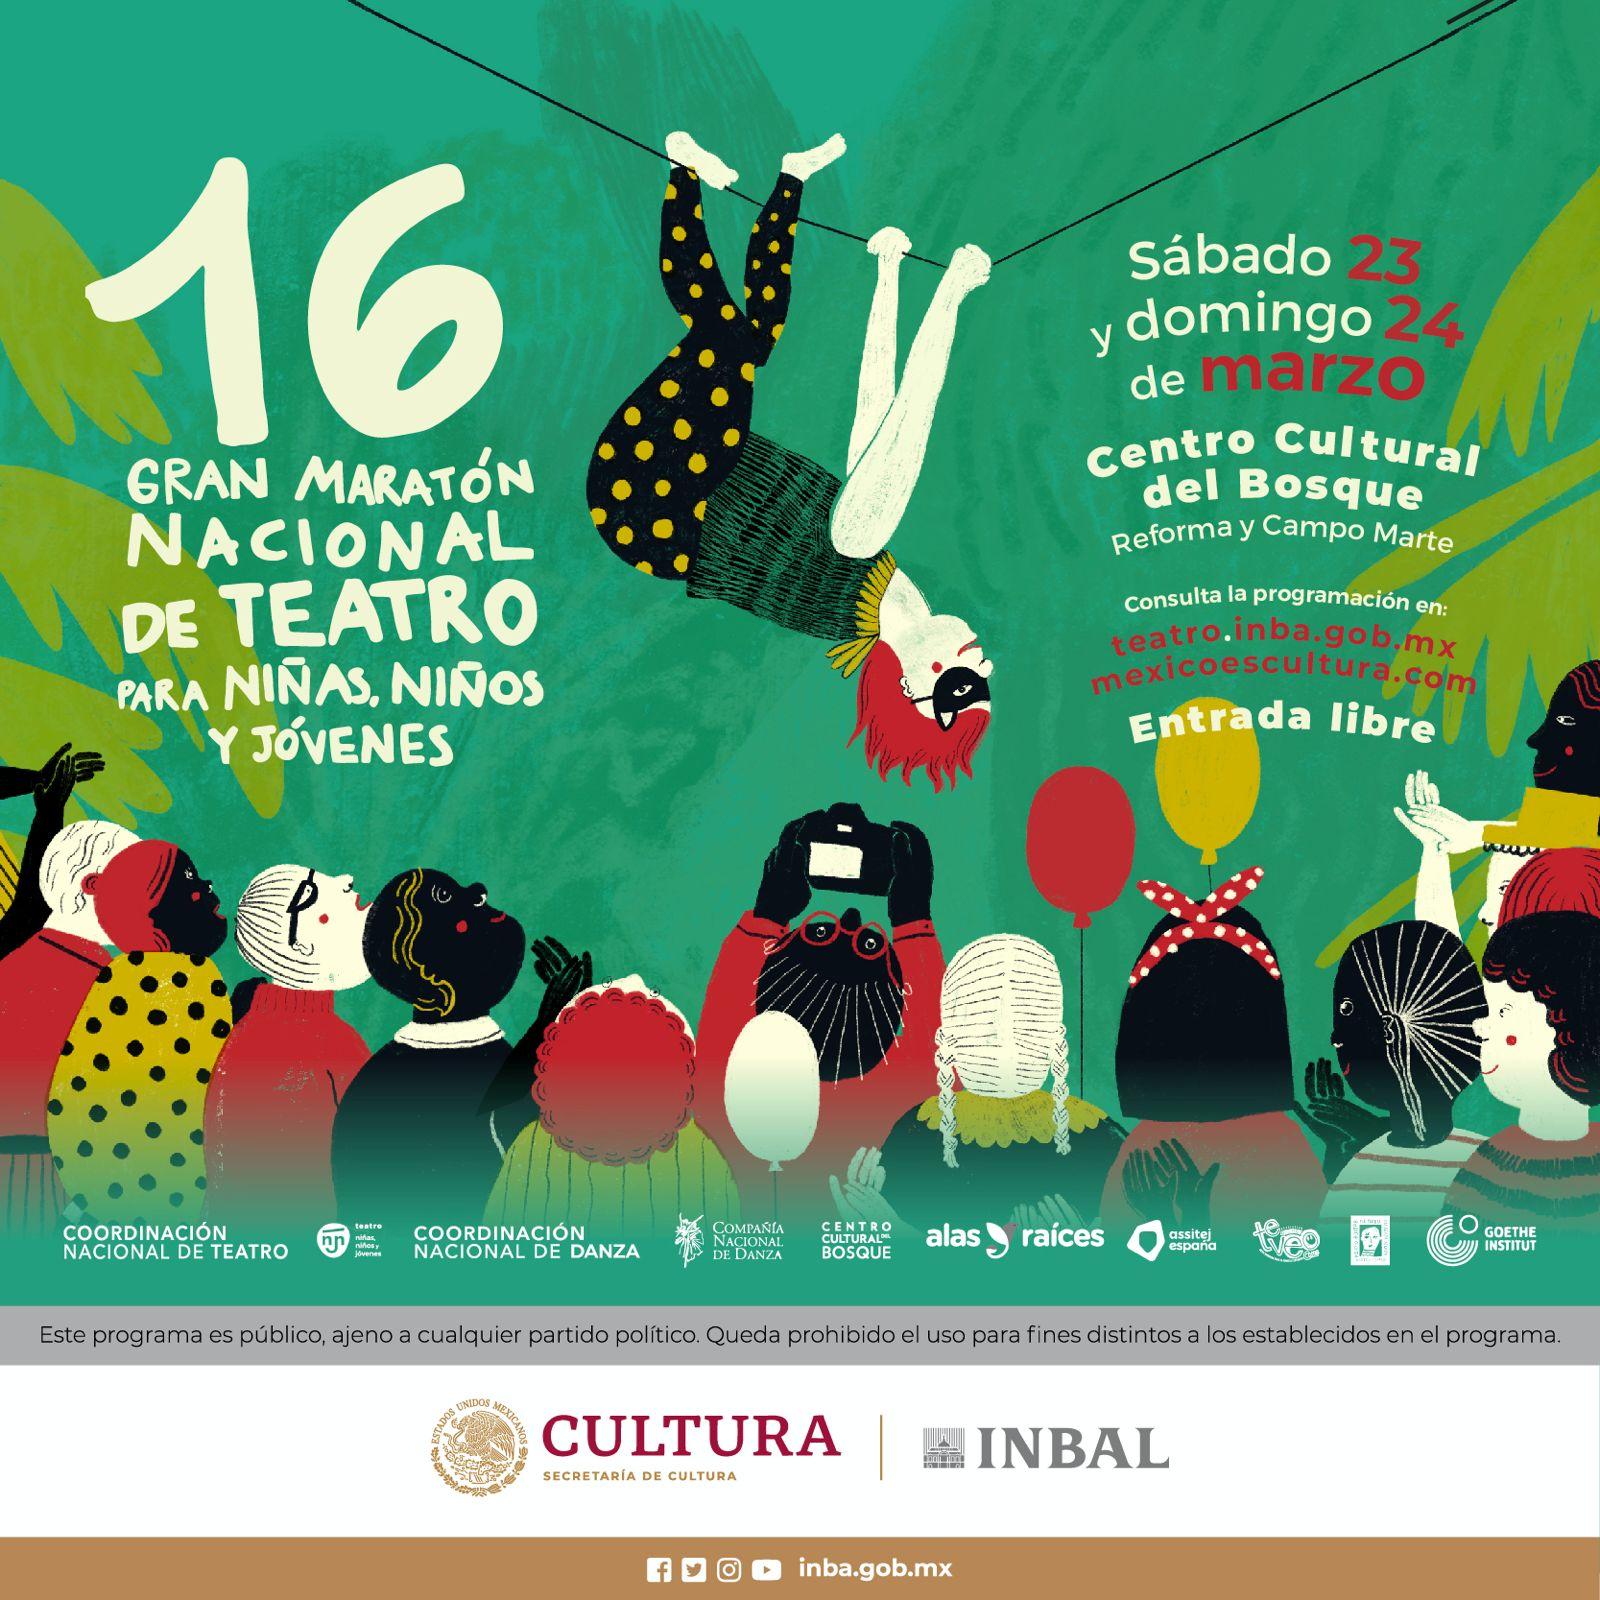 Мексика празднует 16-й Большой театральный марафон для детей и молодежи